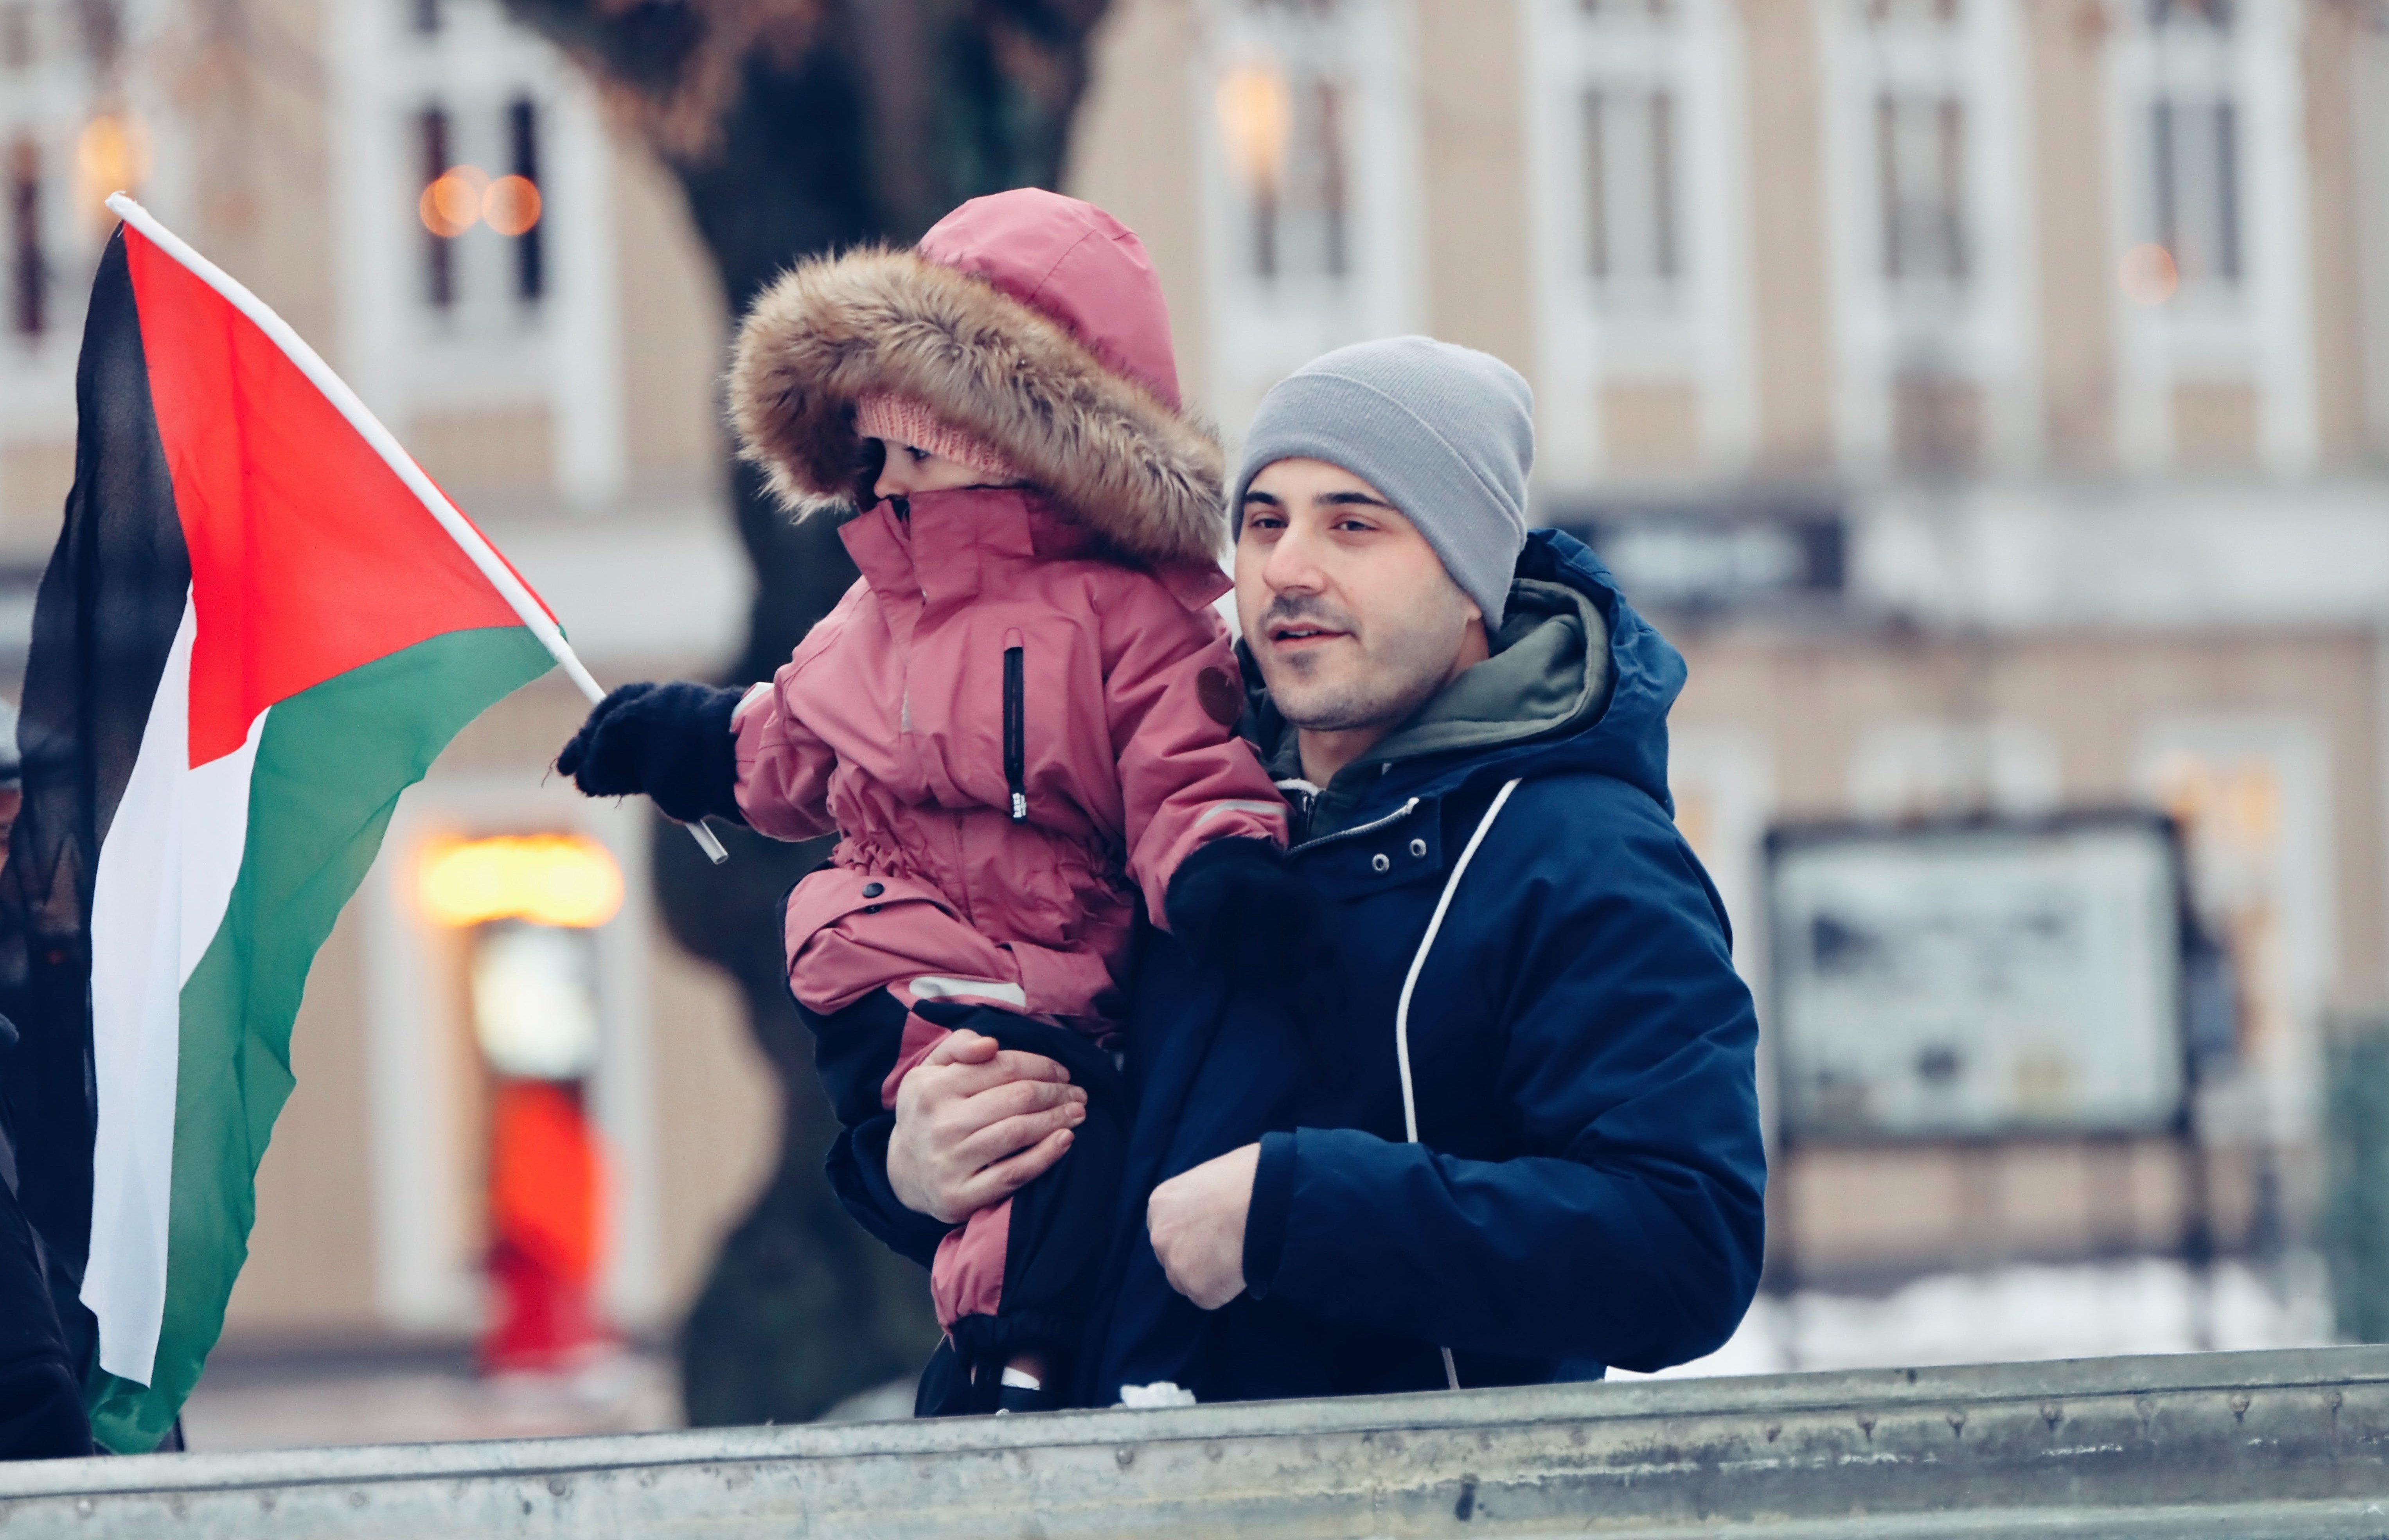 La Ville de Liège doit refuser d'appliquer la déchéance de la nationalité belge des enfants palestiniens